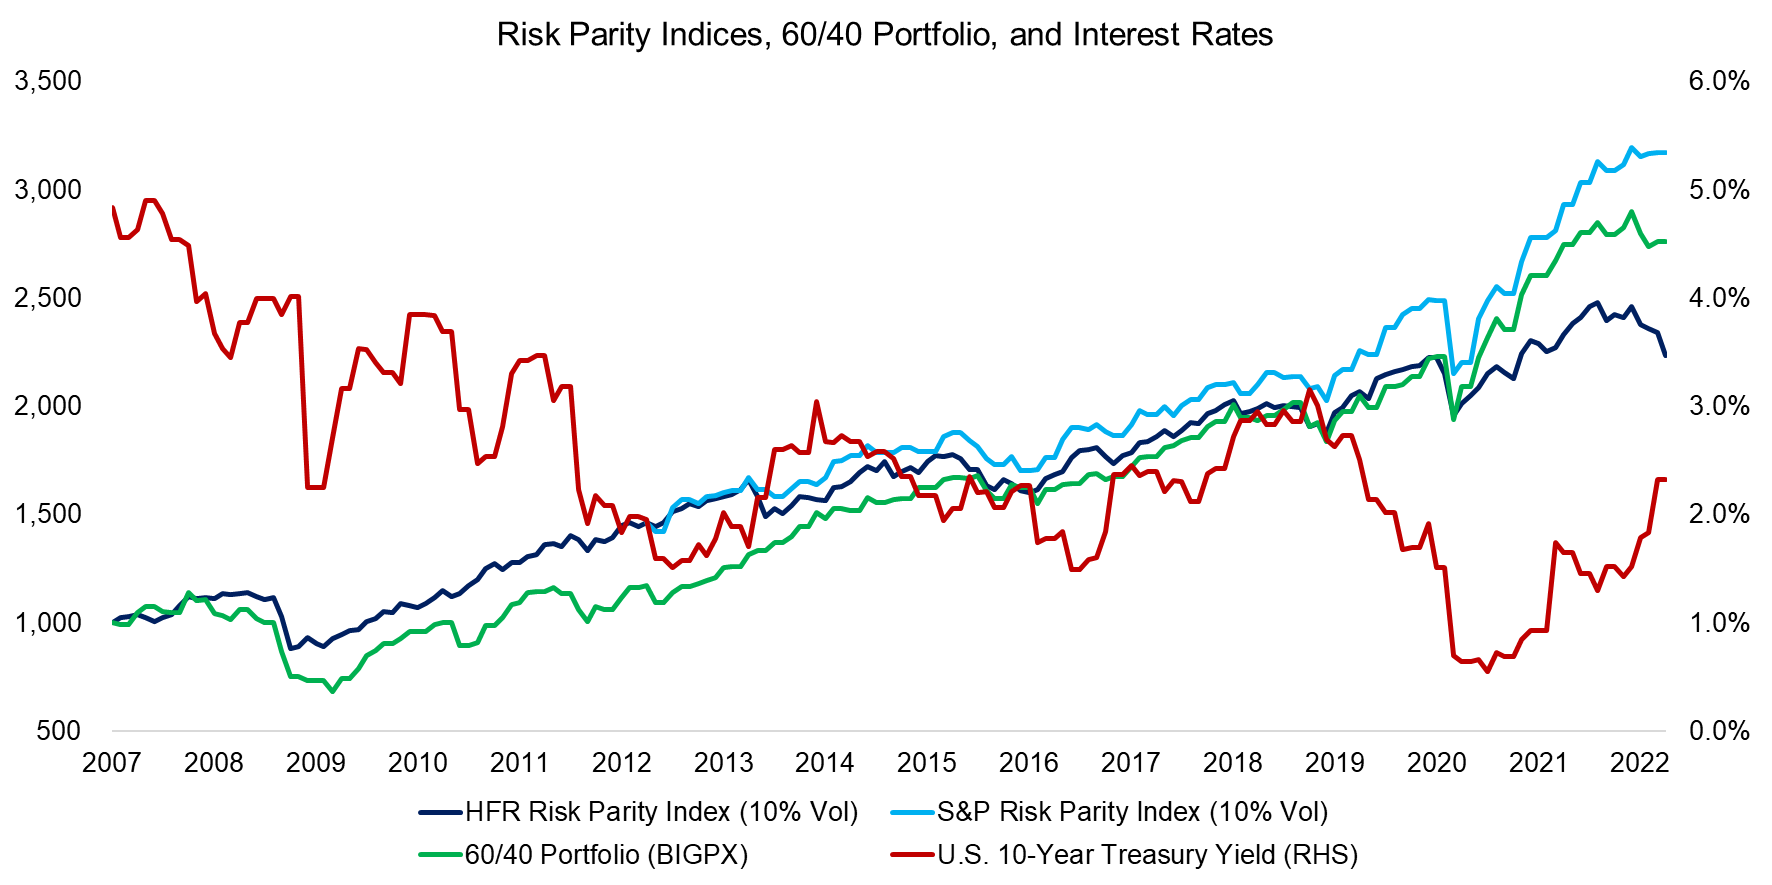 Risk Parity Indices, 6040 Portfolio, and Interest Rates